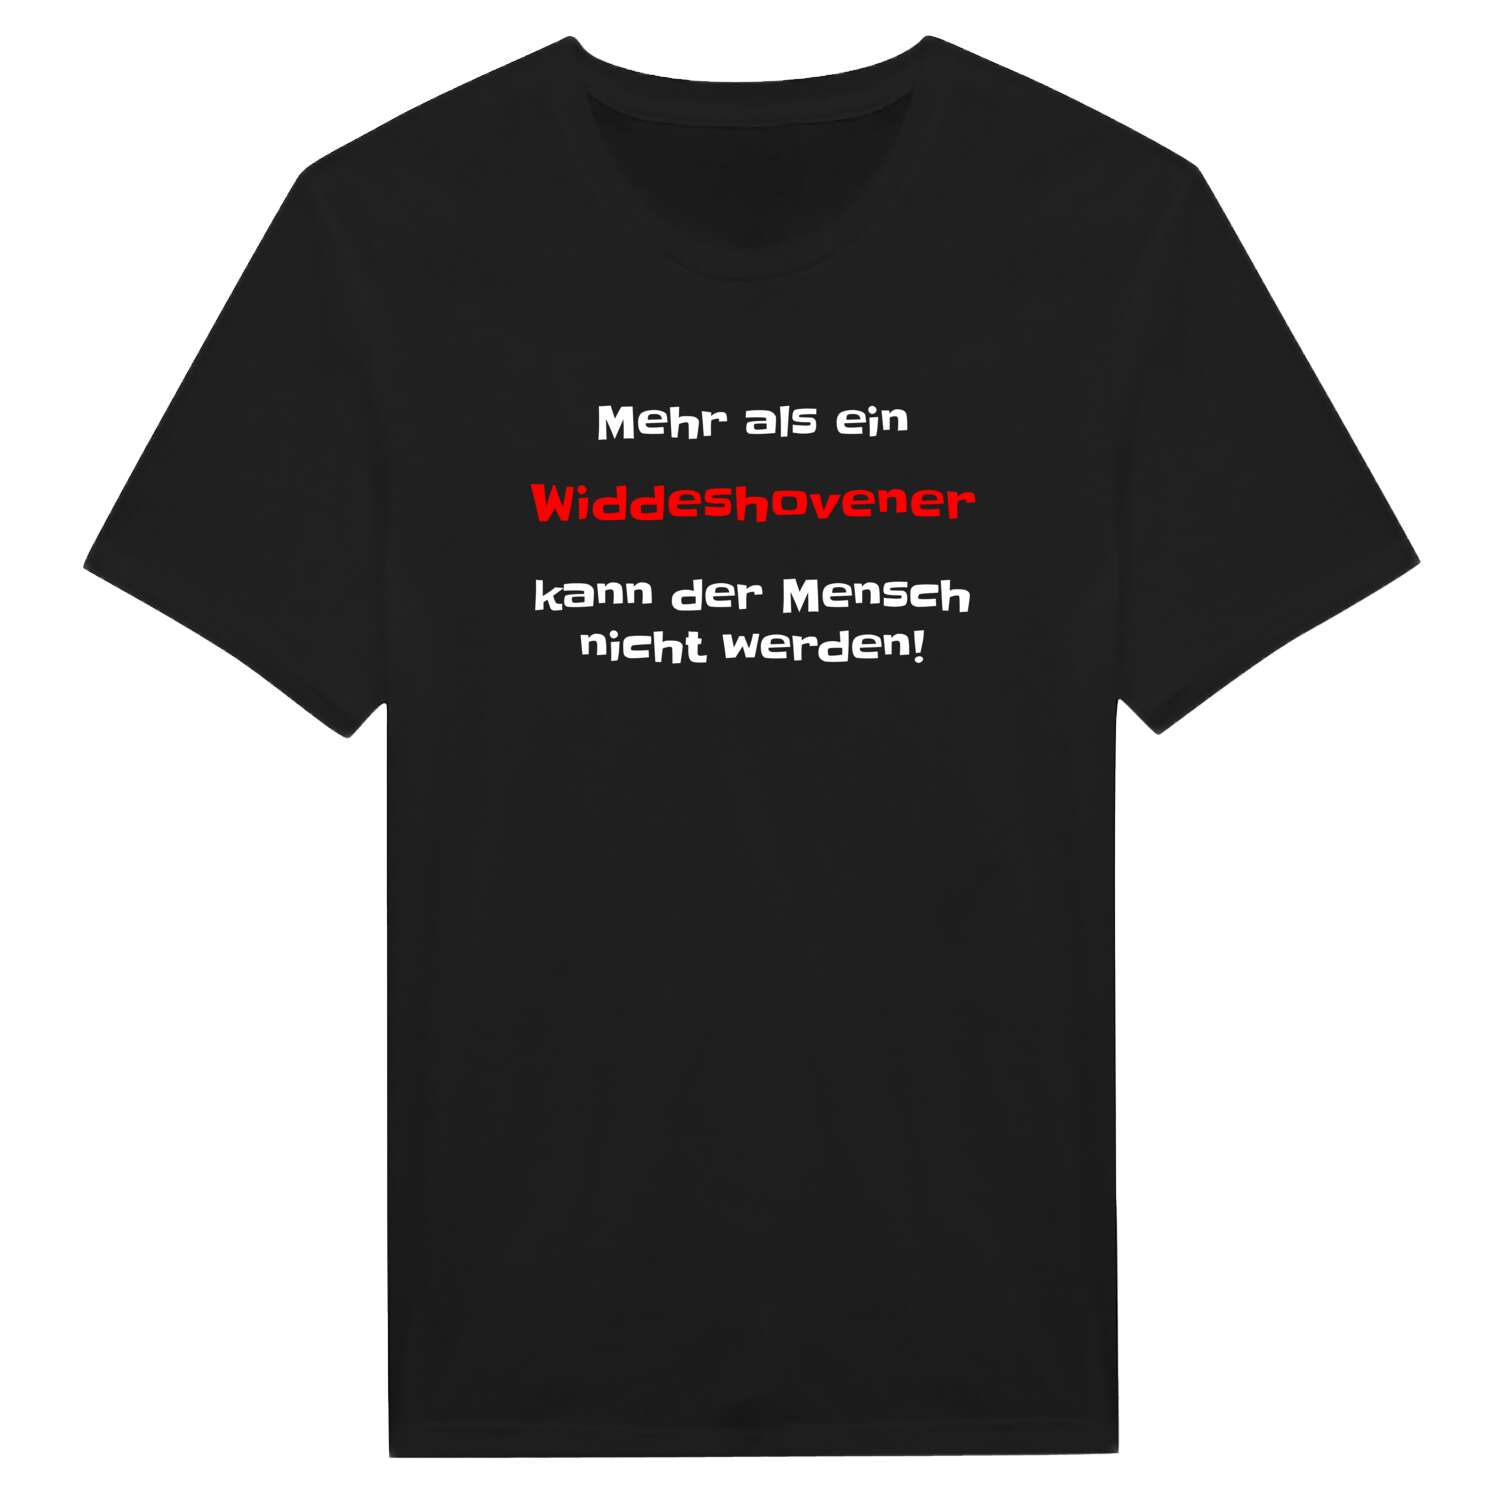 Widdeshoven T-Shirt »Mehr als ein«